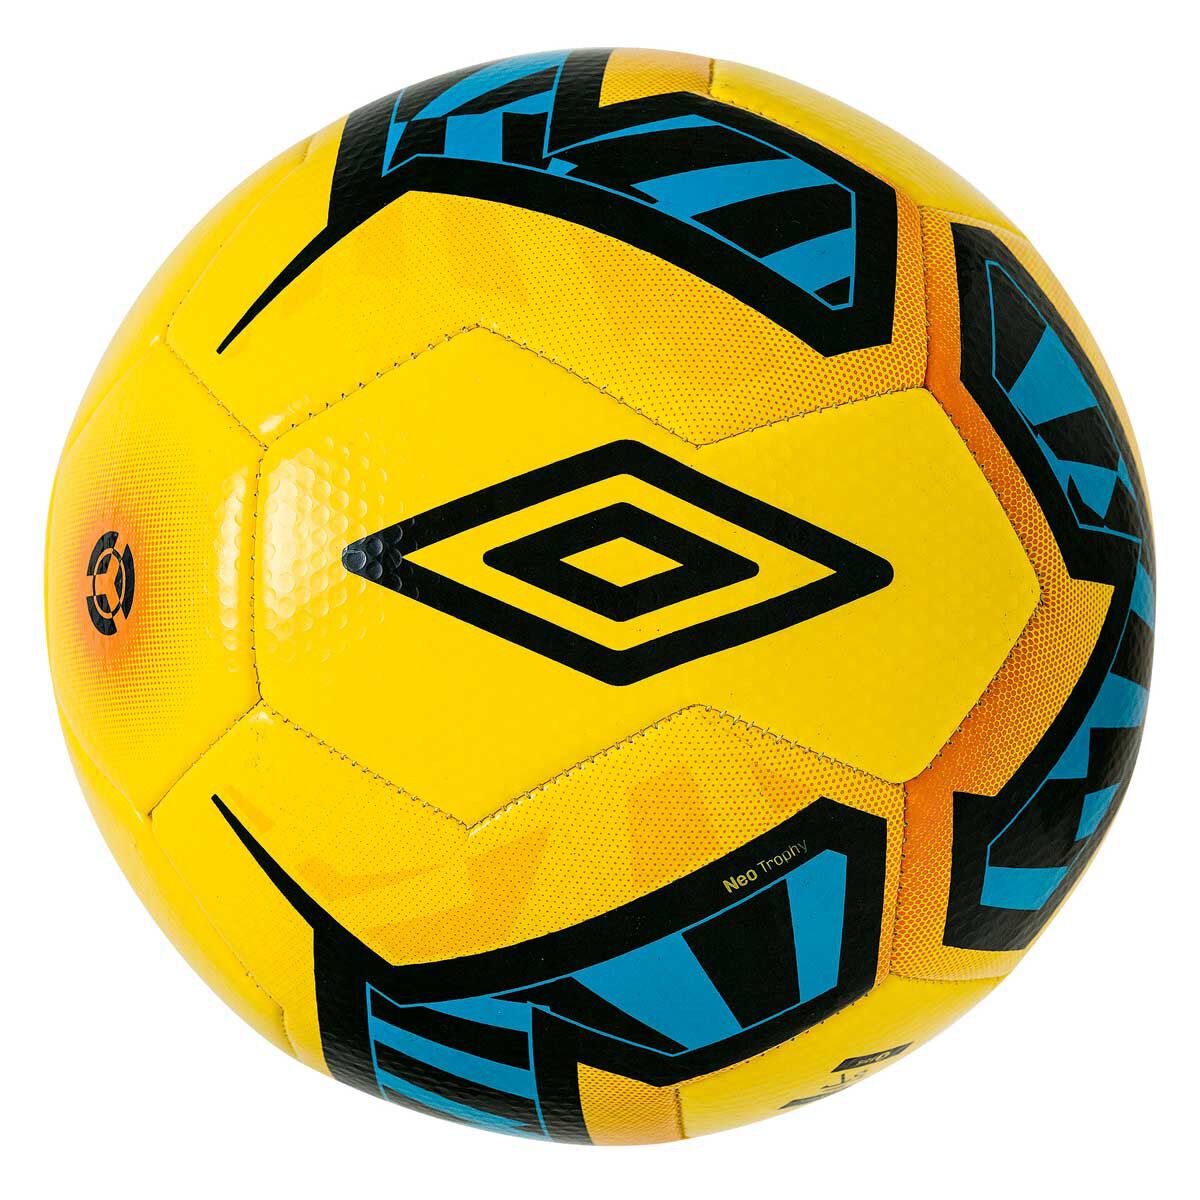 umbro soccer ball size 4